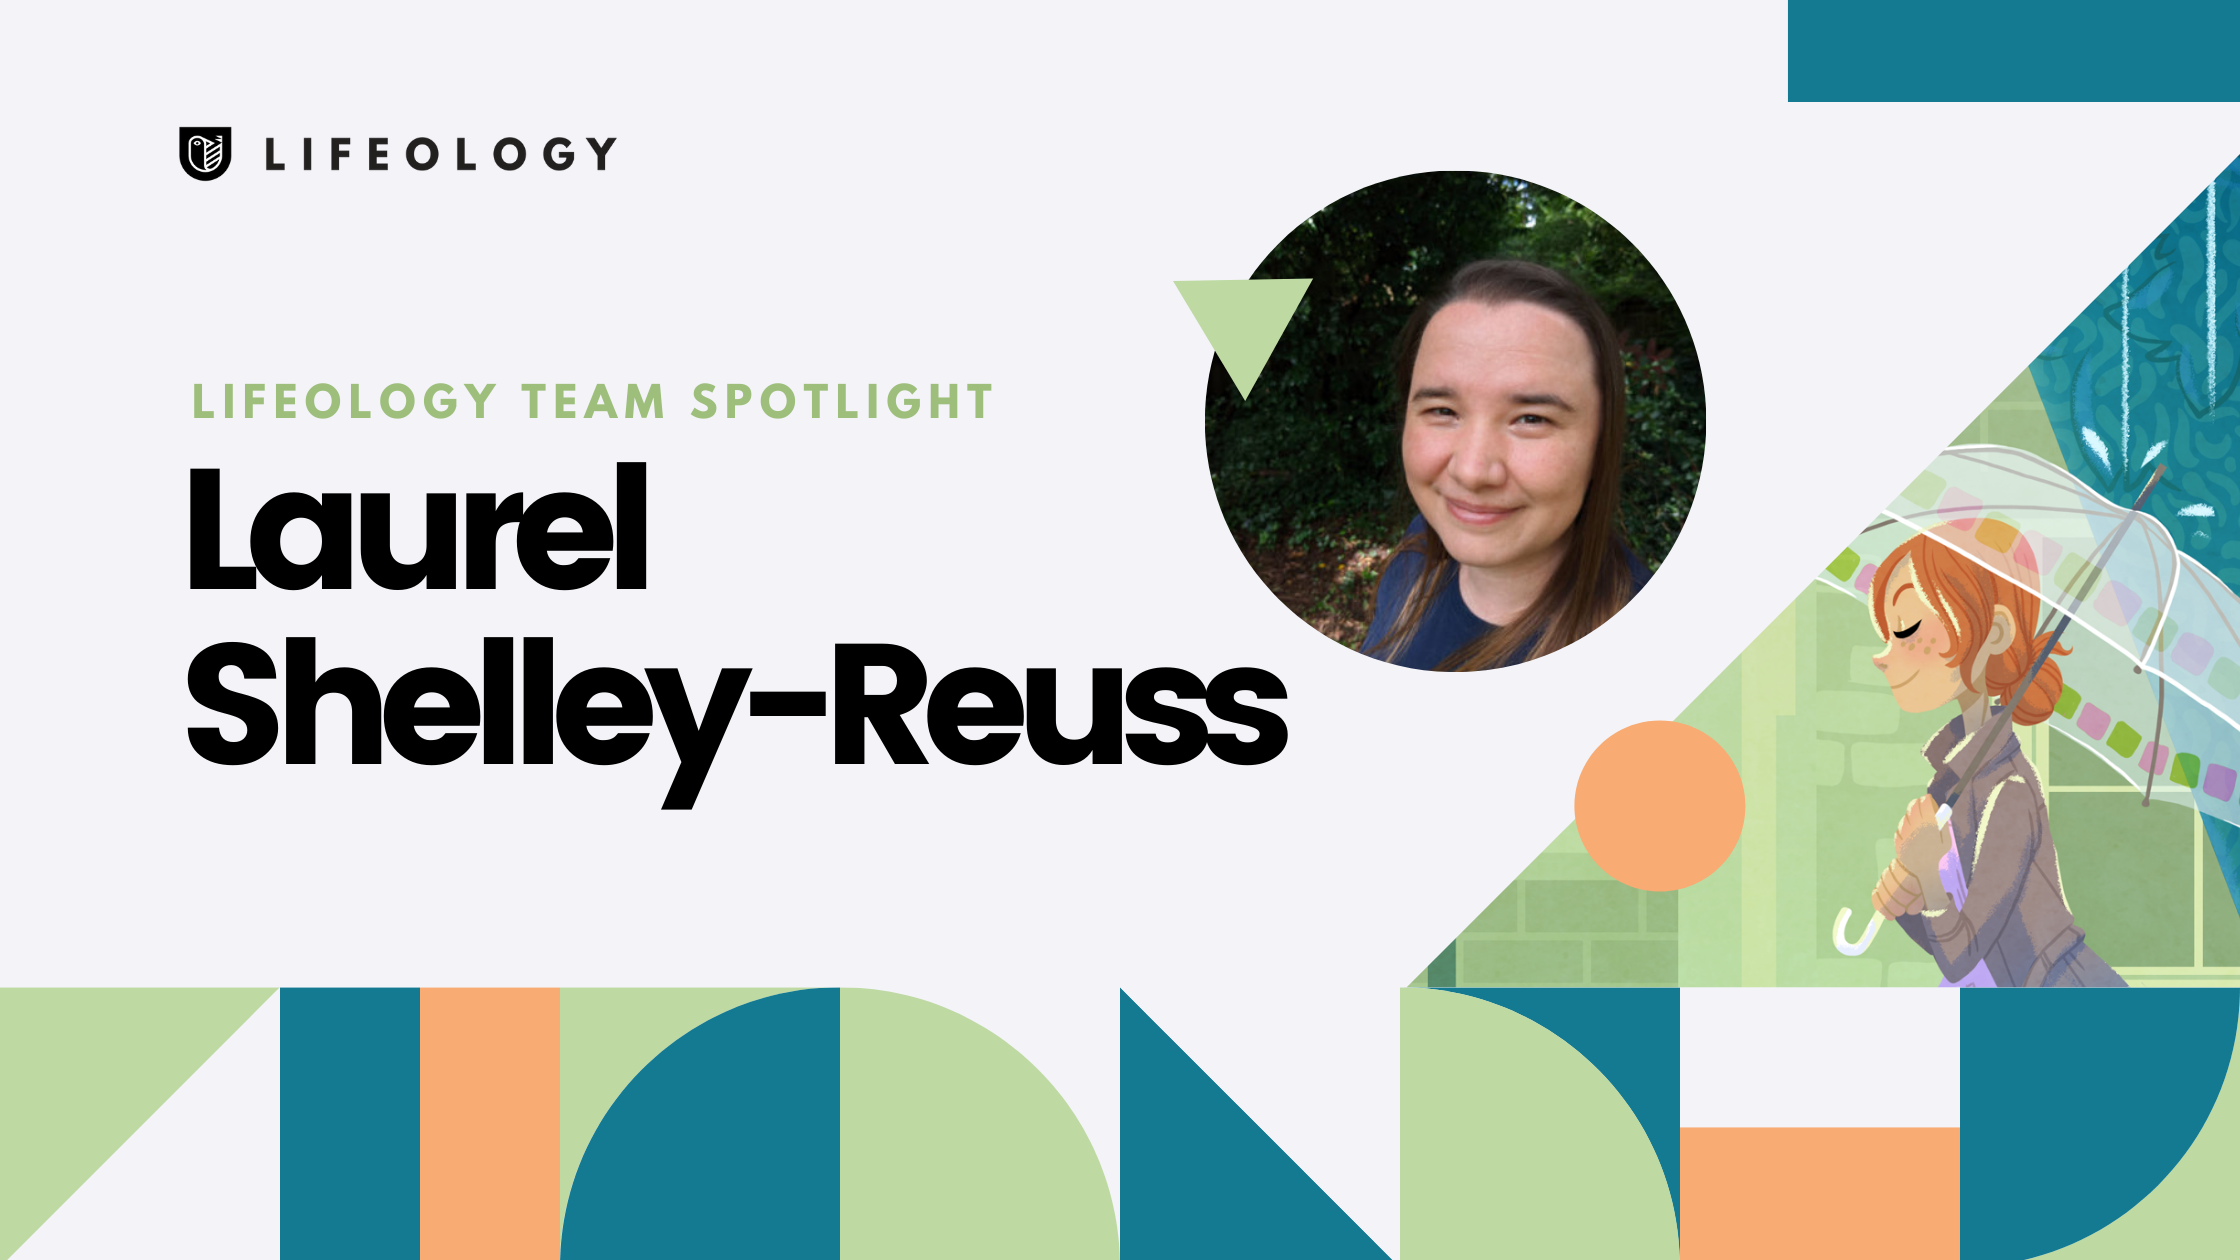 Lifeology Team member Spotlight - Laurel Shelley-Reuss